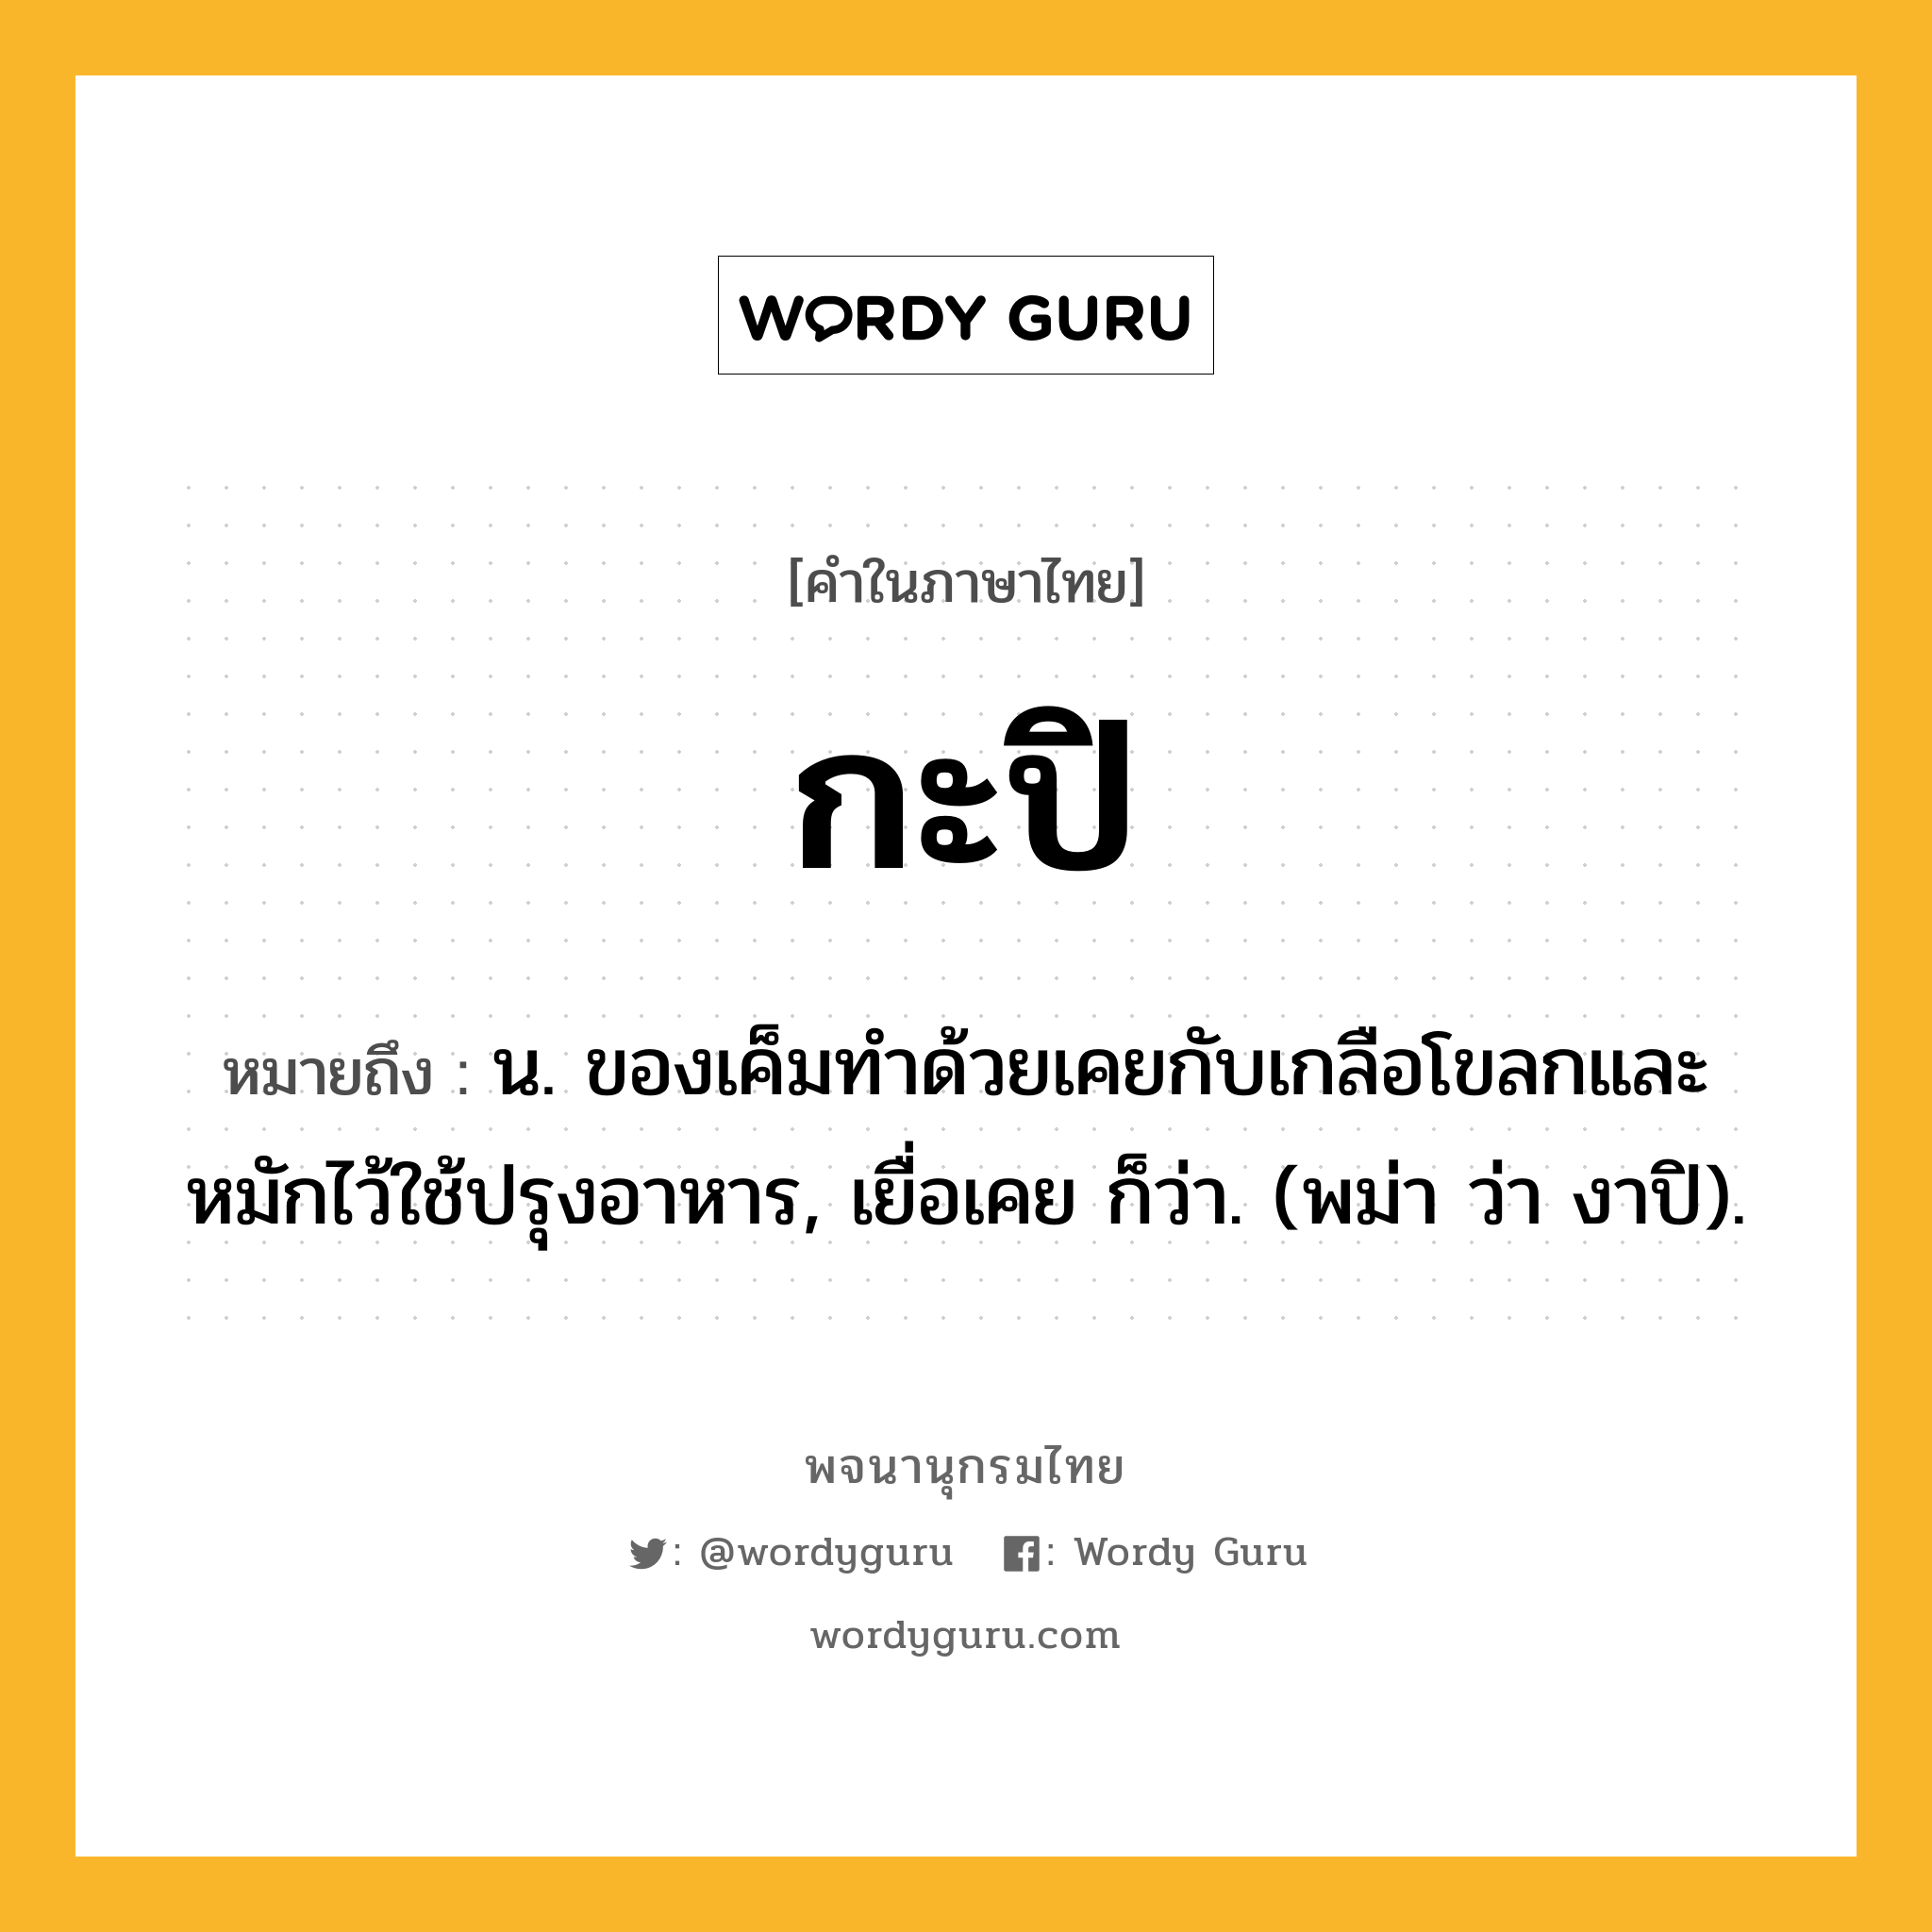 กะปิ ความหมาย หมายถึงอะไร?, คำในภาษาไทย กะปิ หมายถึง น. ของเค็มทําด้วยเคยกับเกลือโขลกและหมักไว้ใช้ปรุงอาหาร, เยื่อเคย ก็ว่า. (พม่า ว่า งาปิ).